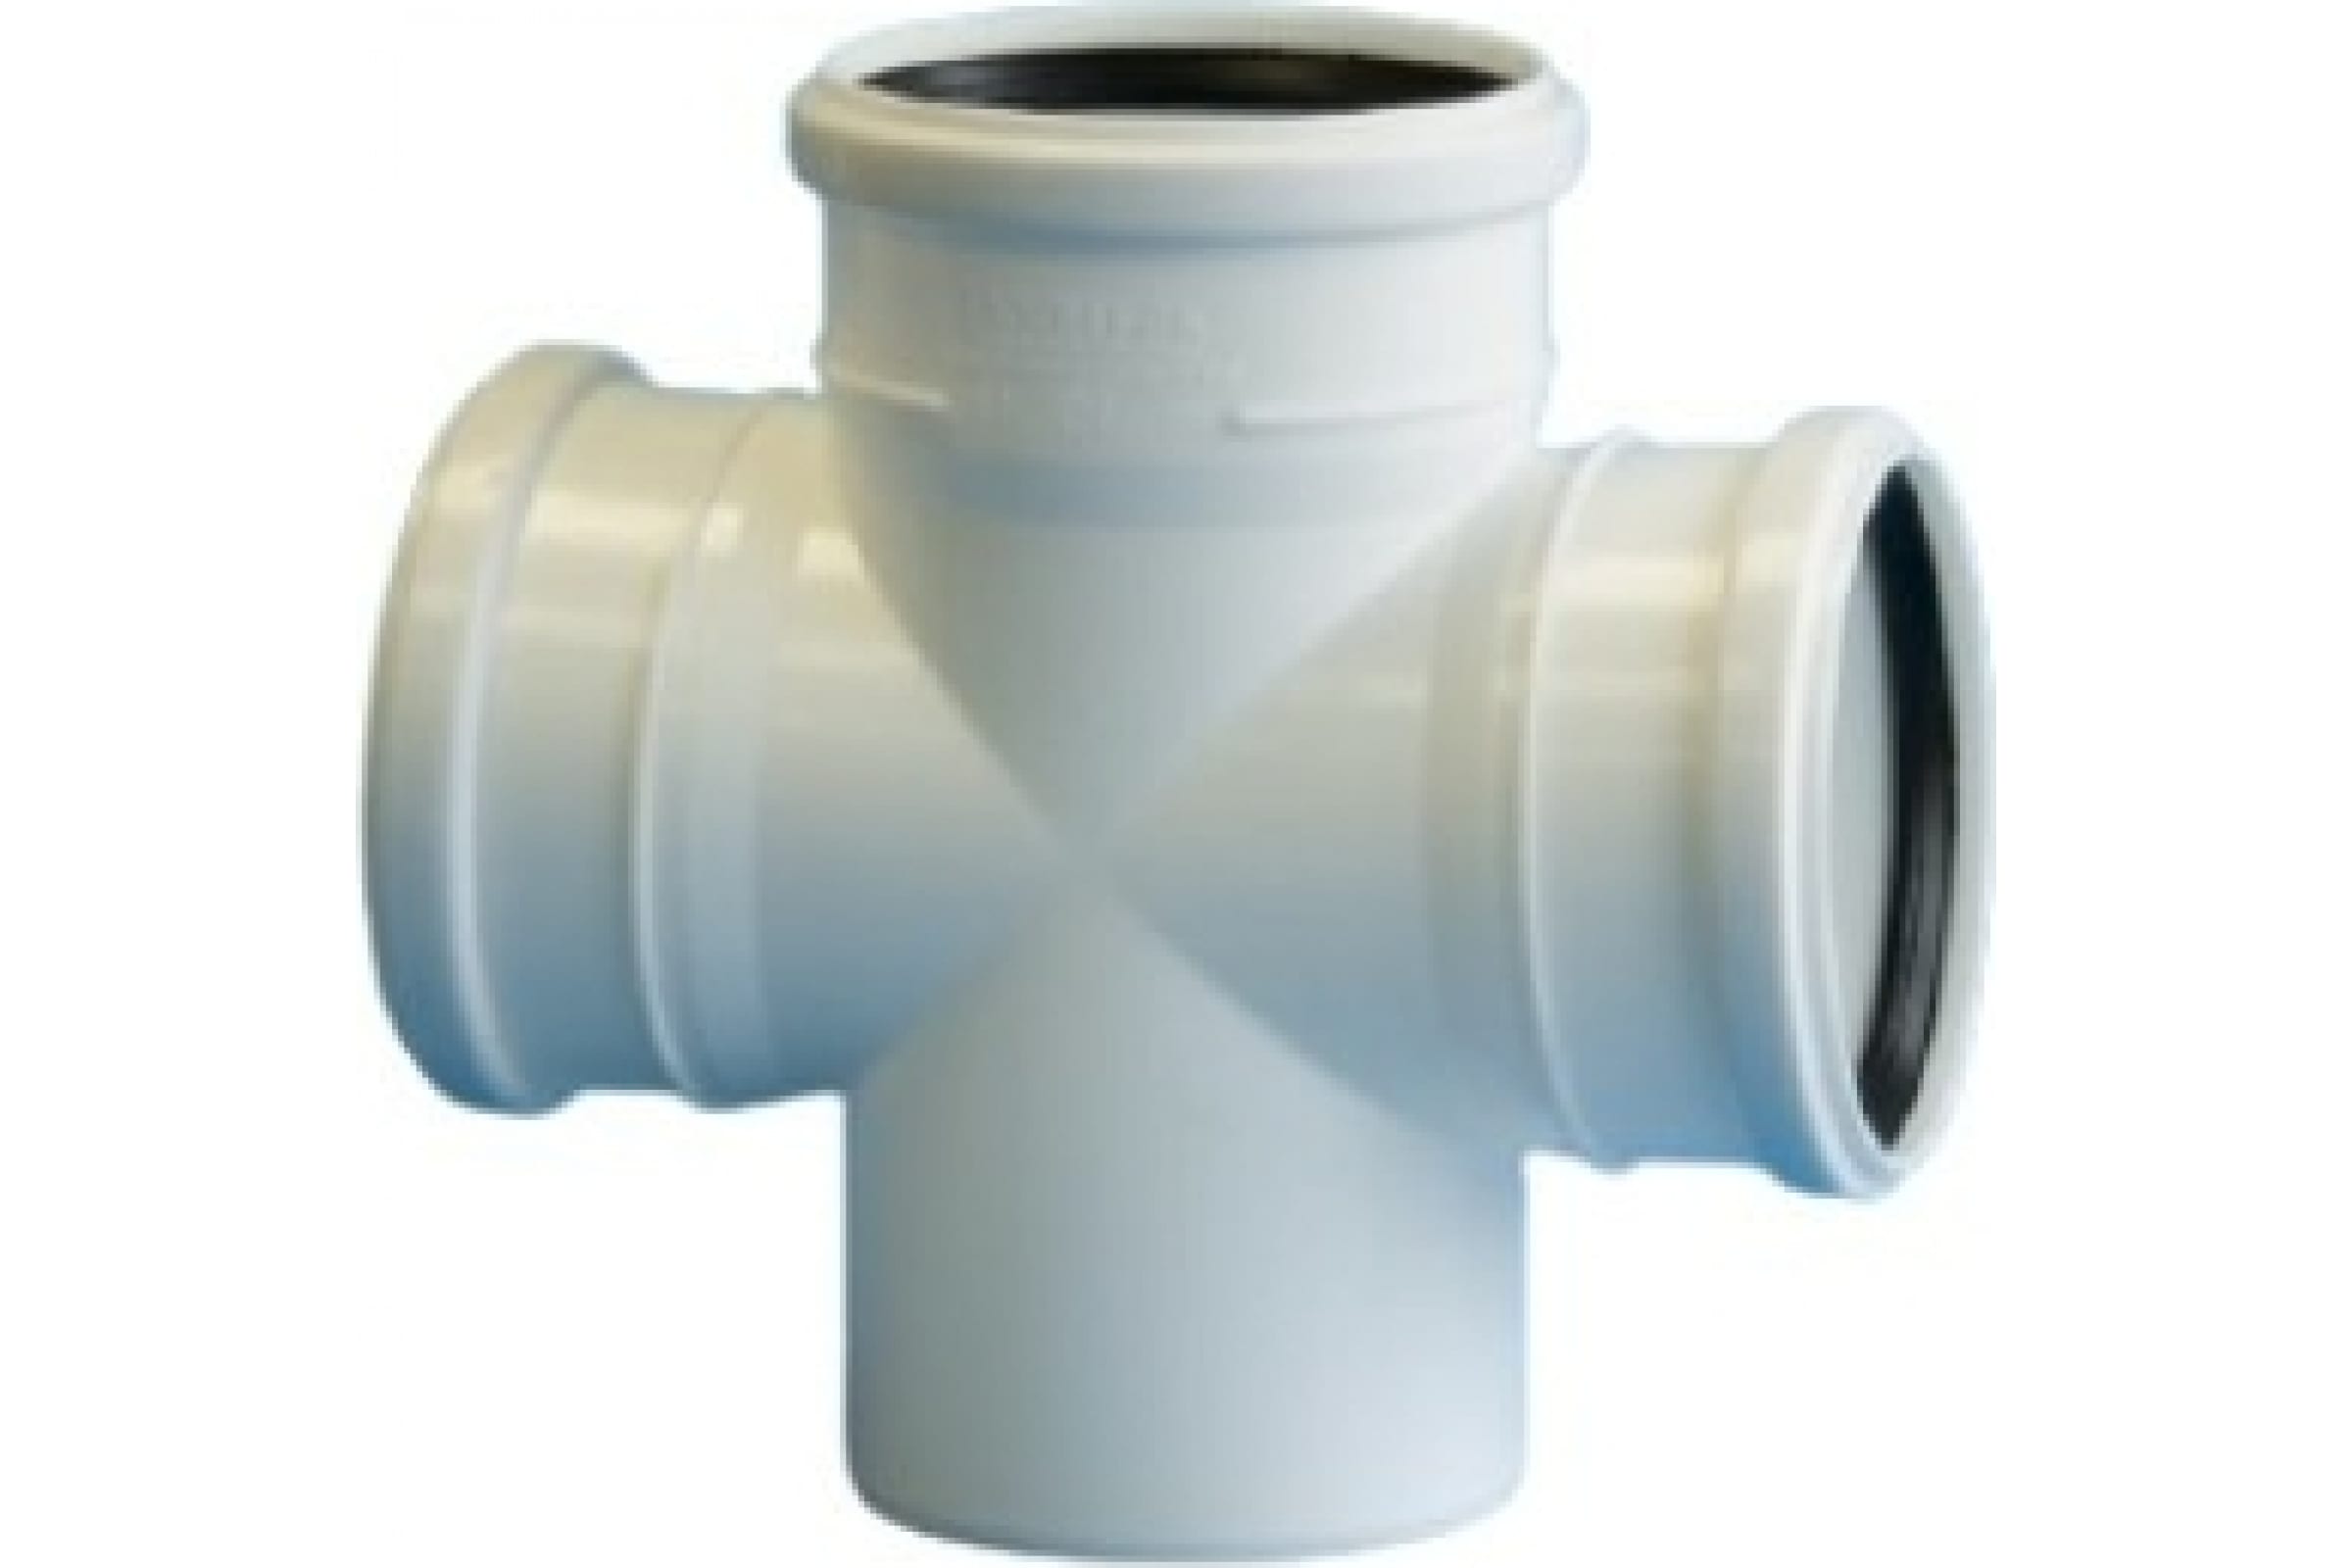 Крестовина Политэк ПП одноплоскостная для бесшумной канализации, 110x110x110 мм, 1 шт.